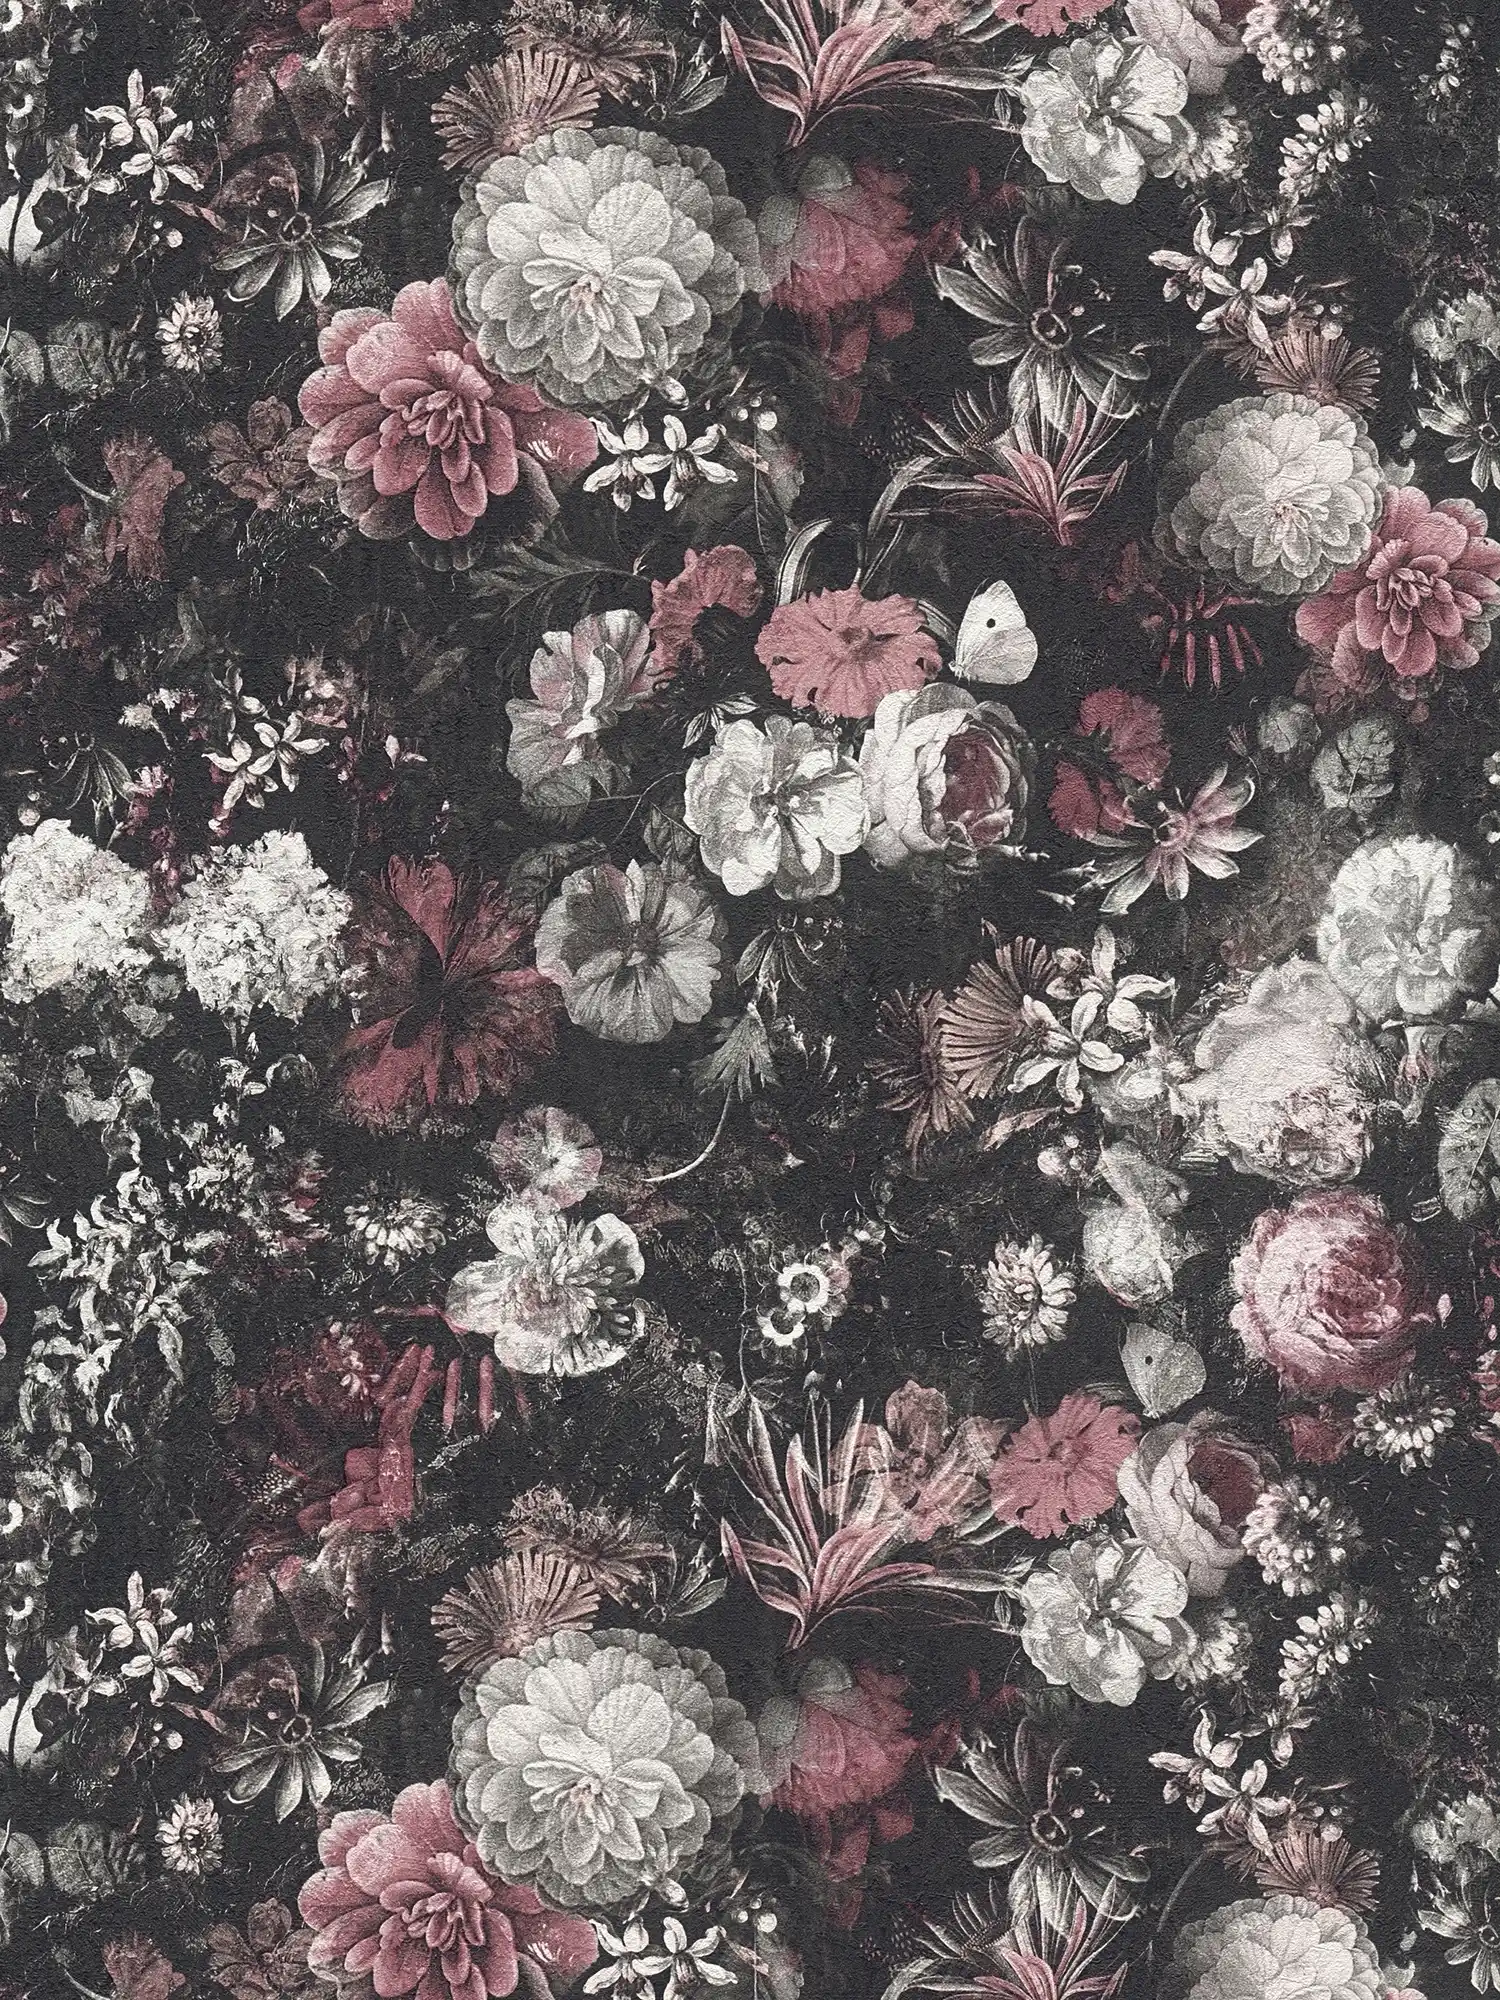             Vintage stijl bloemen behang rozen & bloesems - rood, zwart, wit
        